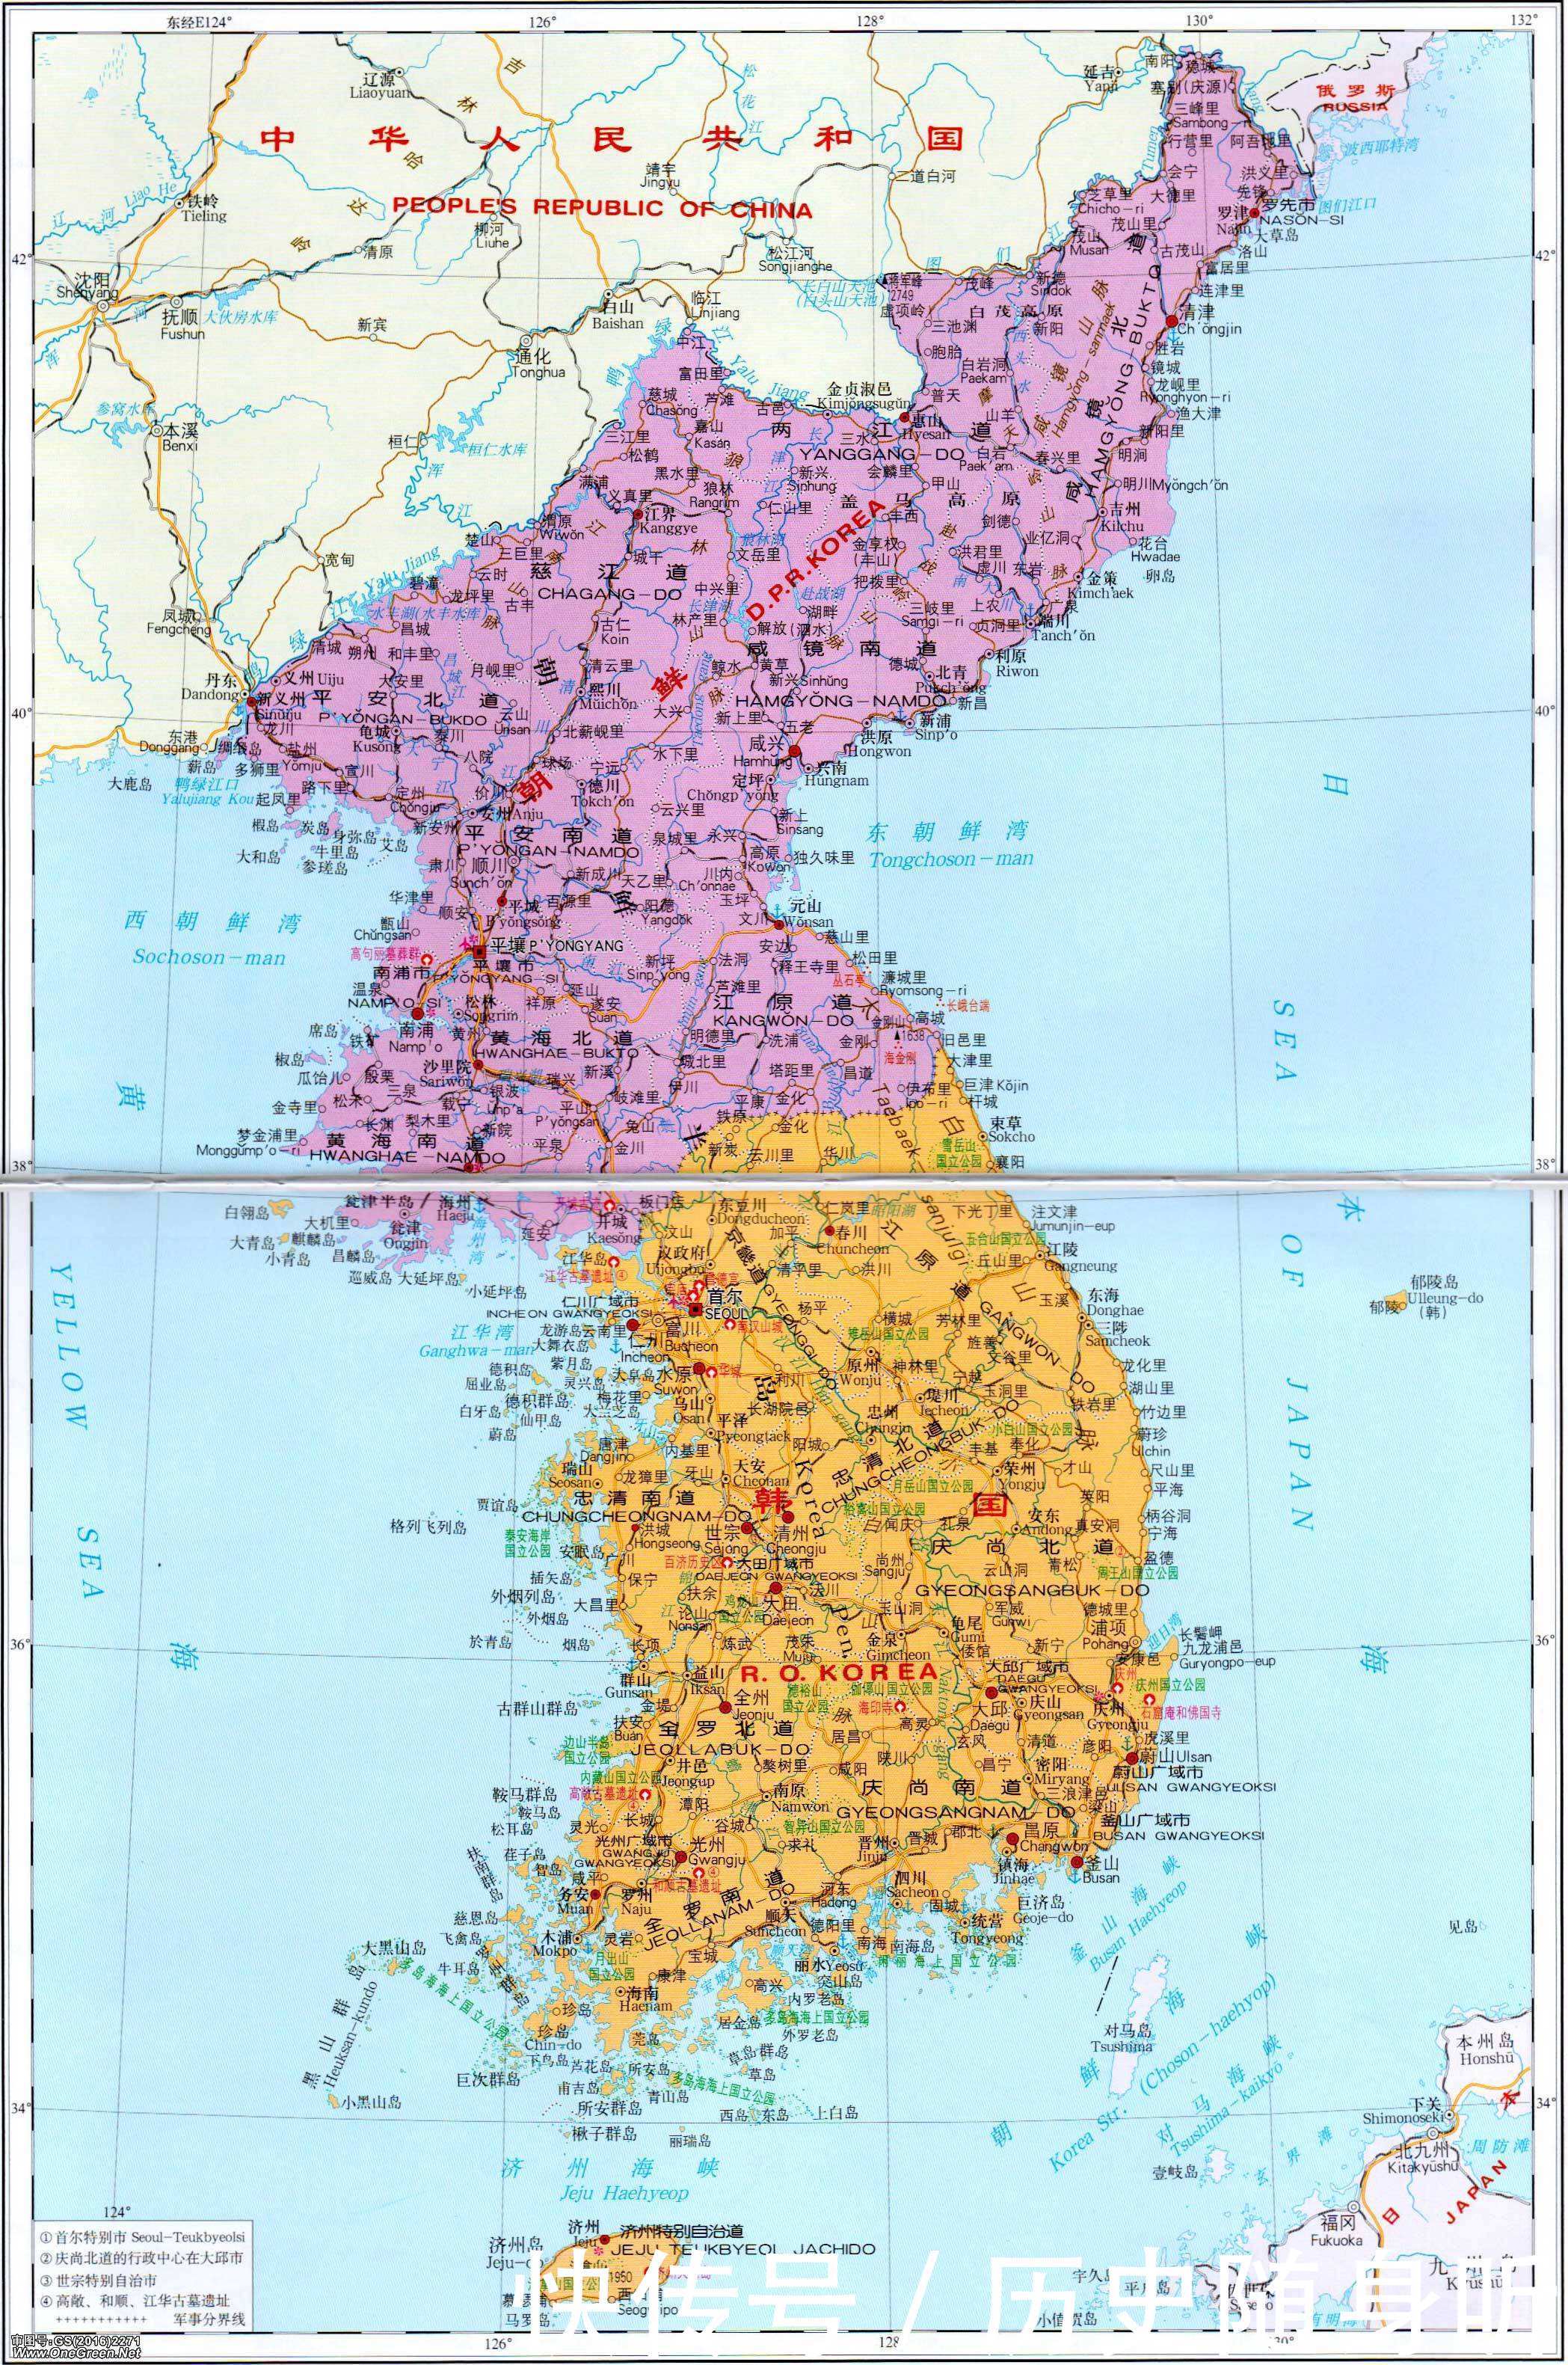 为何古代中国没有拿下朝鲜版块?看地图上,此地